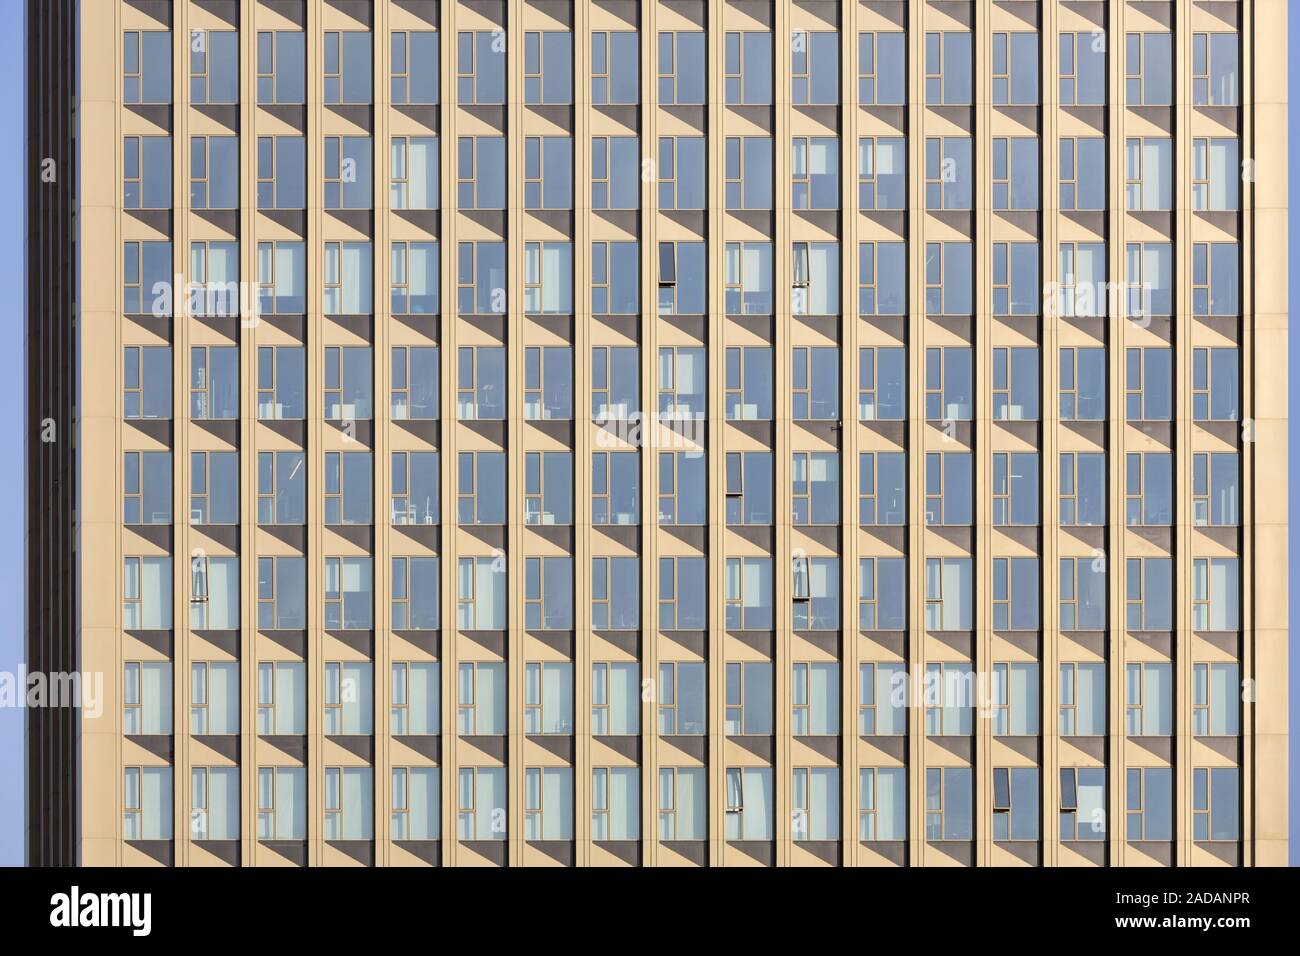 Facade of a modern office building Stock Photo